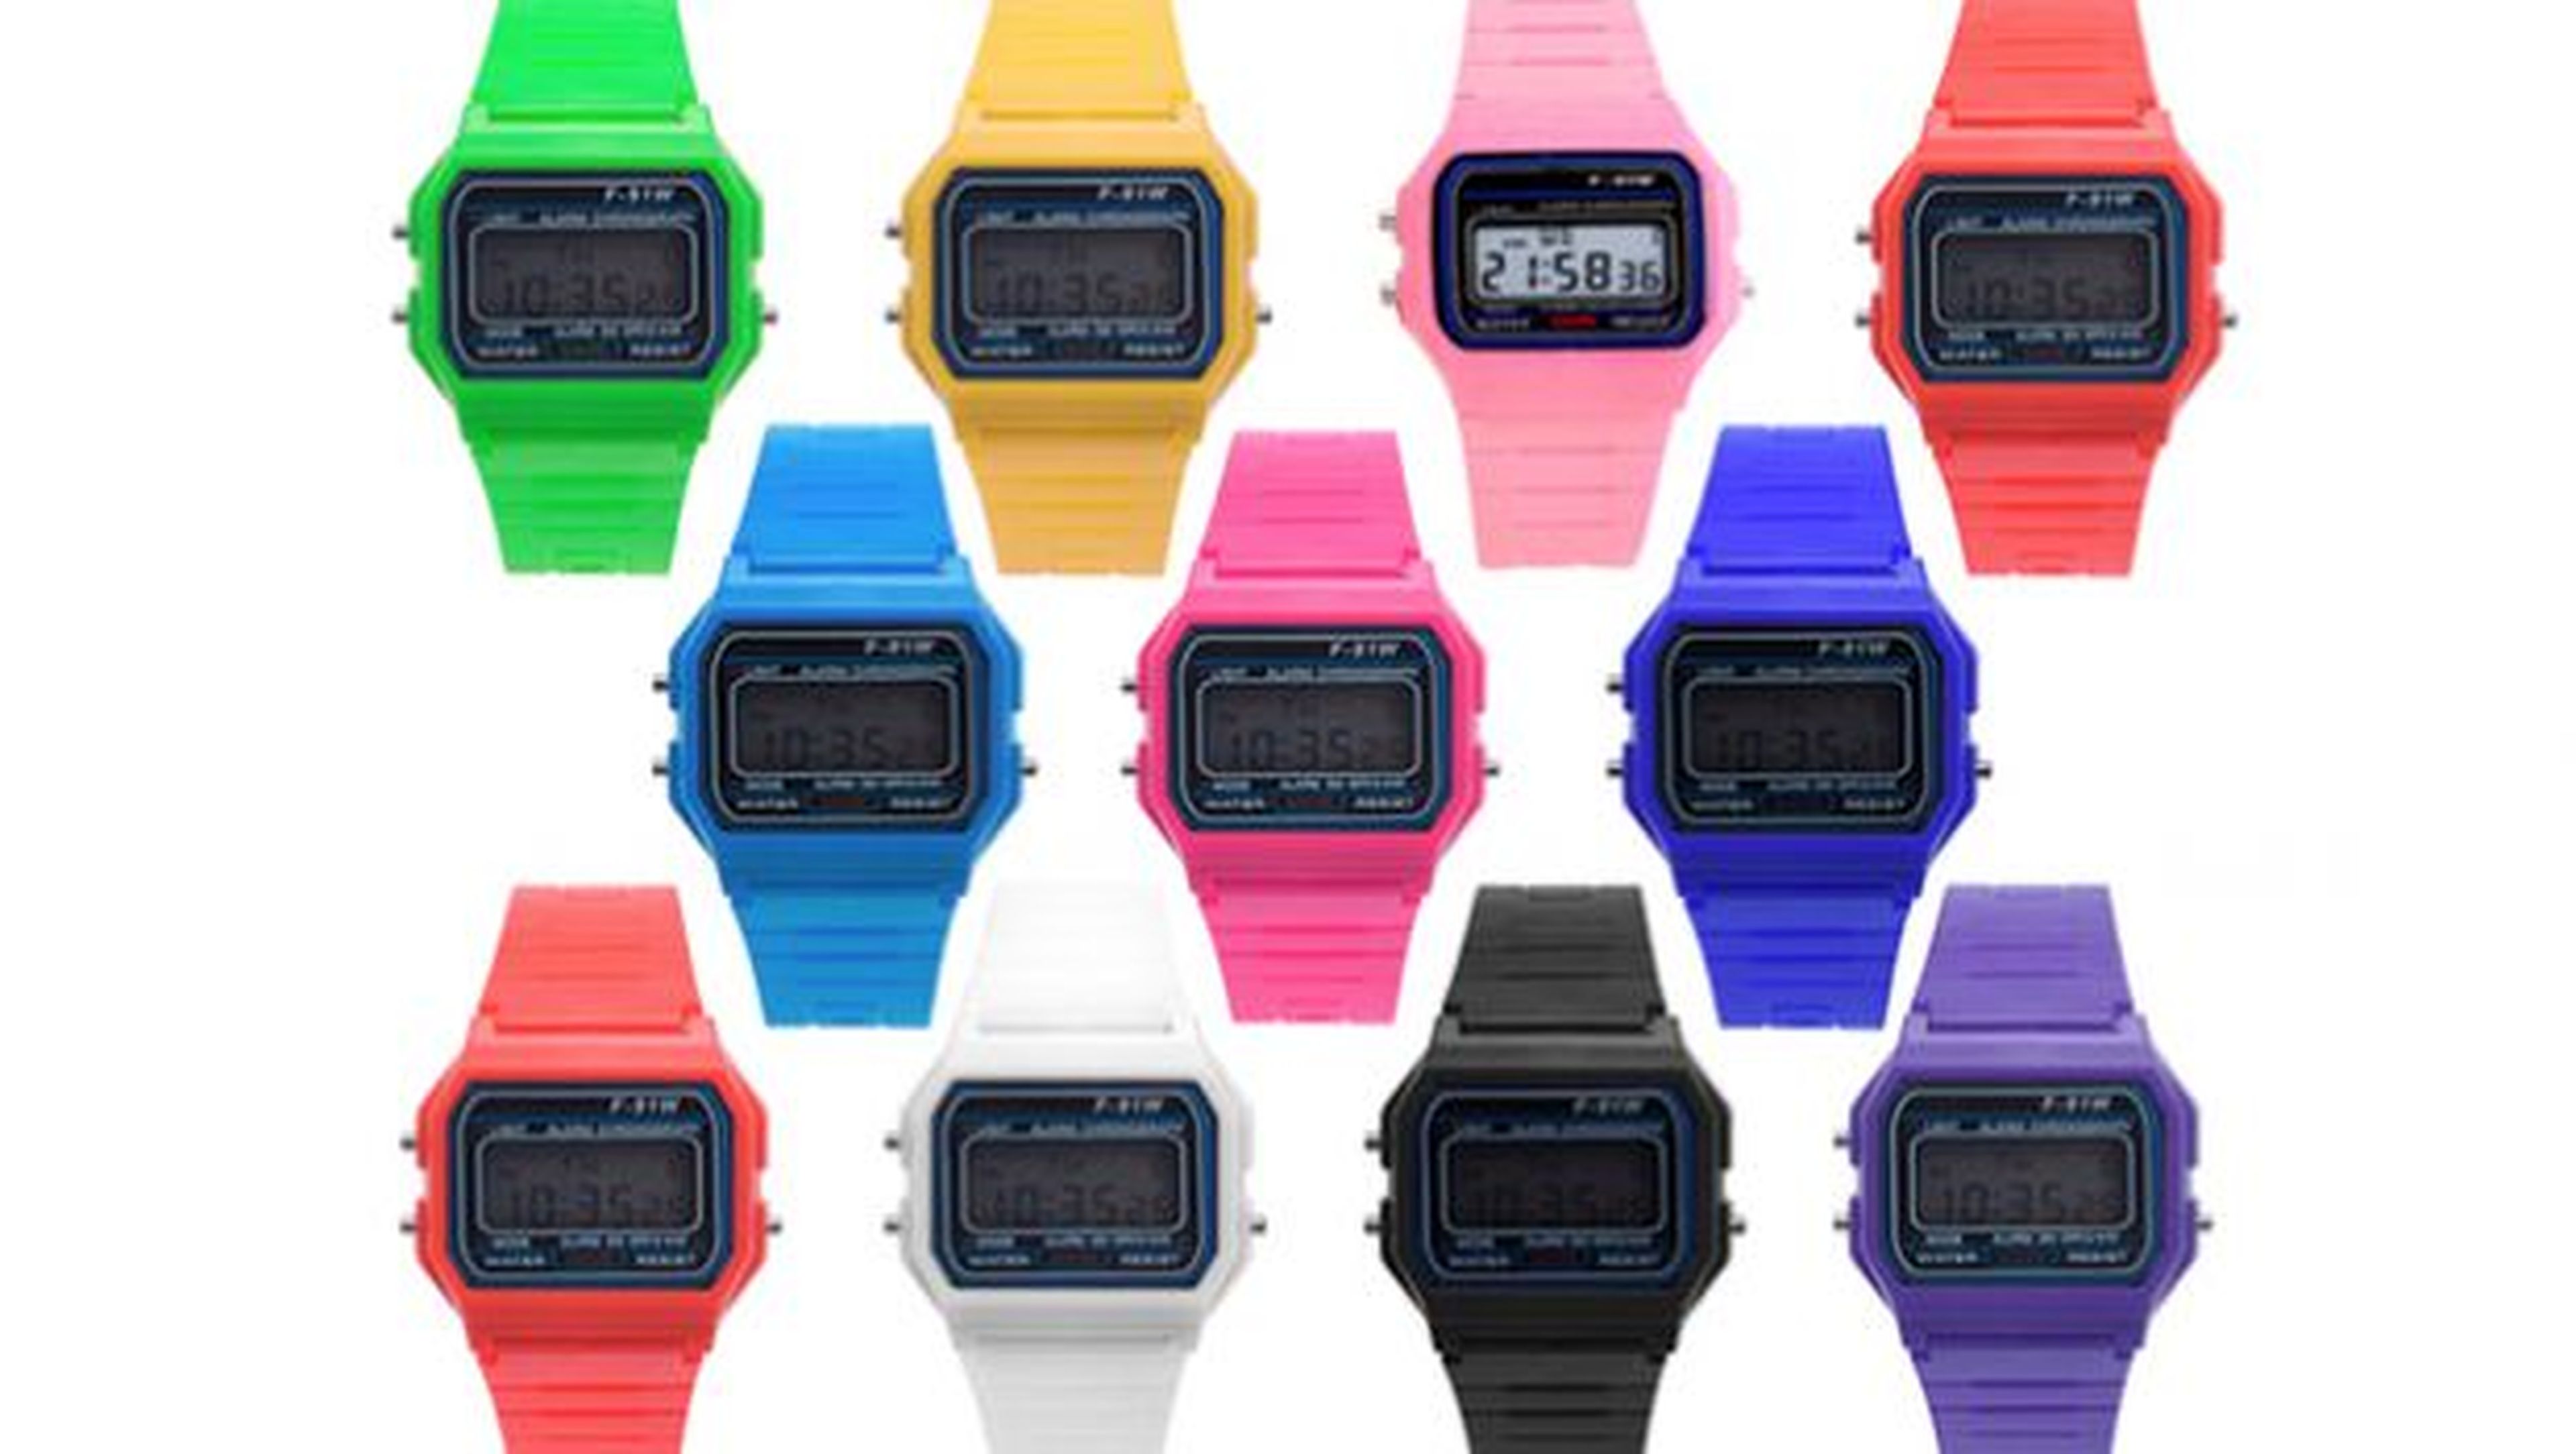 Reloj digital de colores